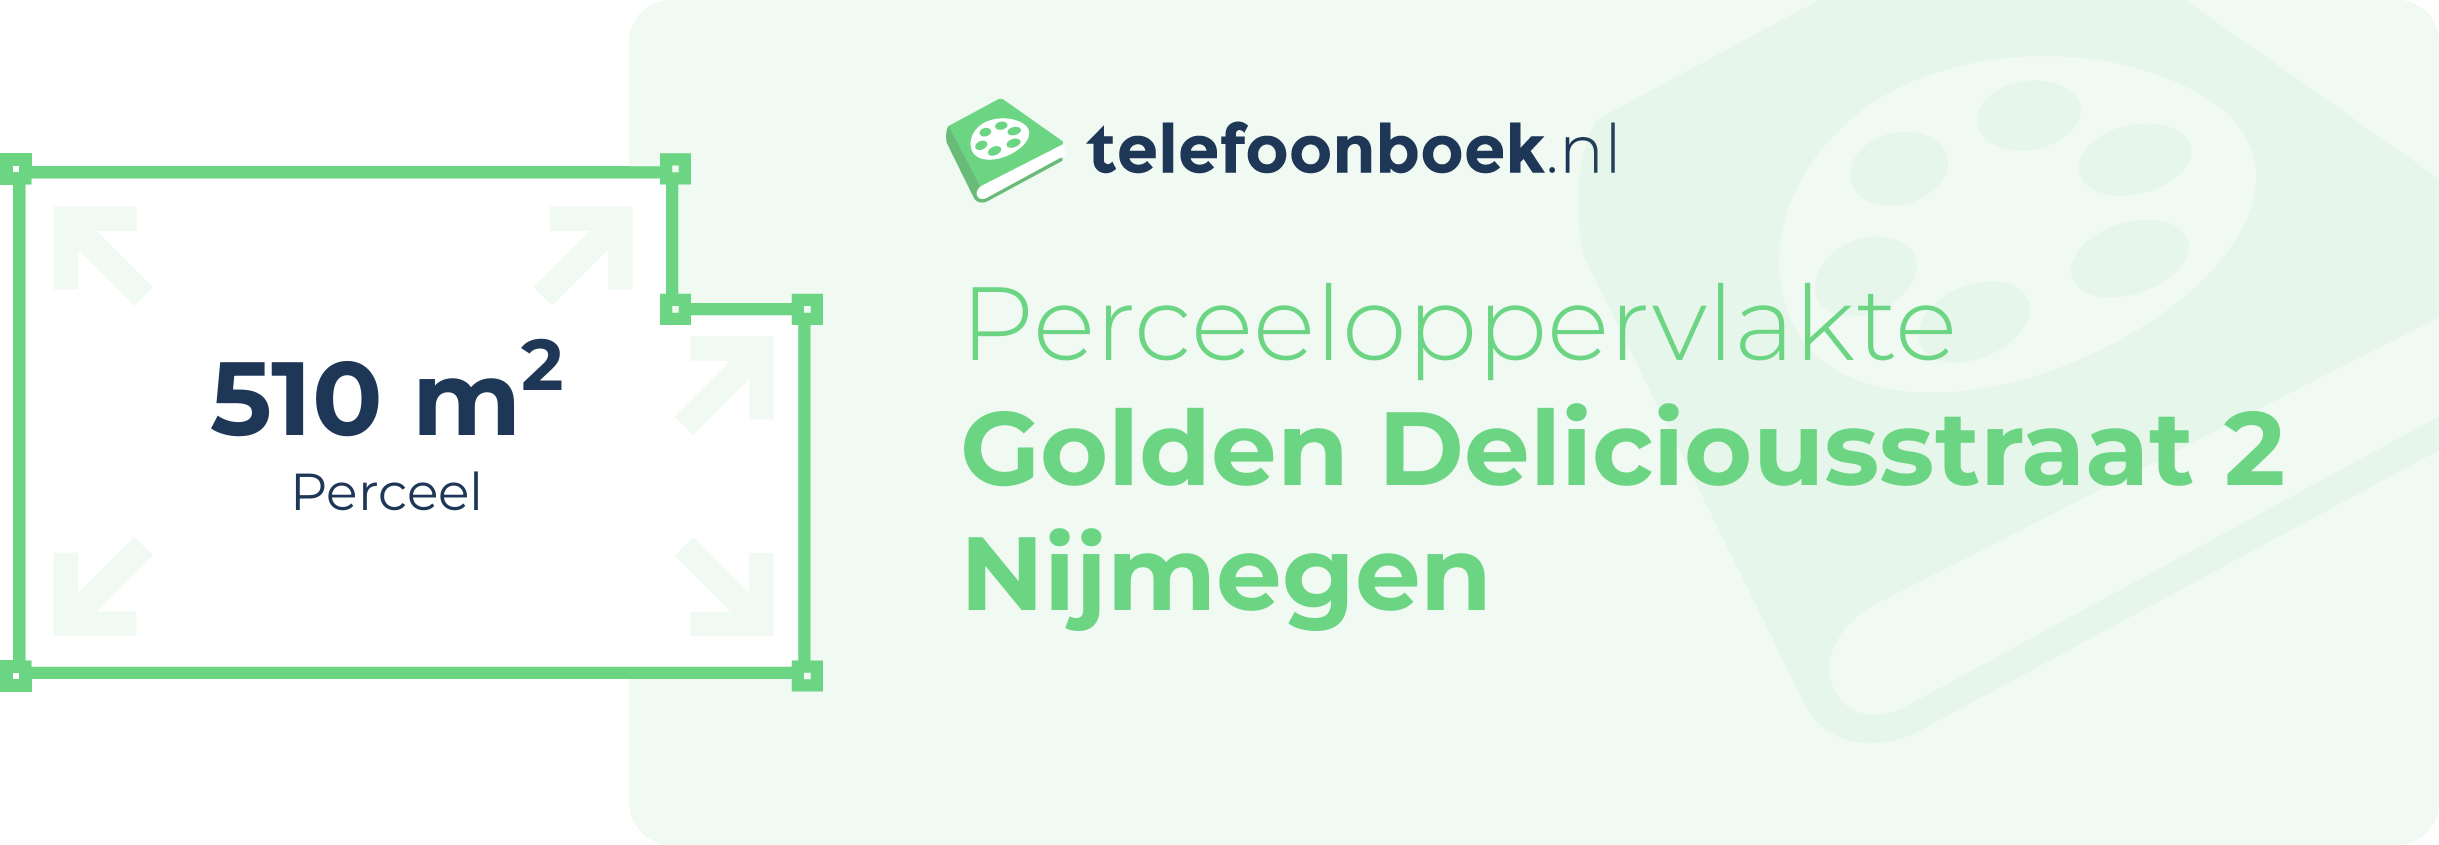 Perceeloppervlakte Golden Deliciousstraat 2 Nijmegen